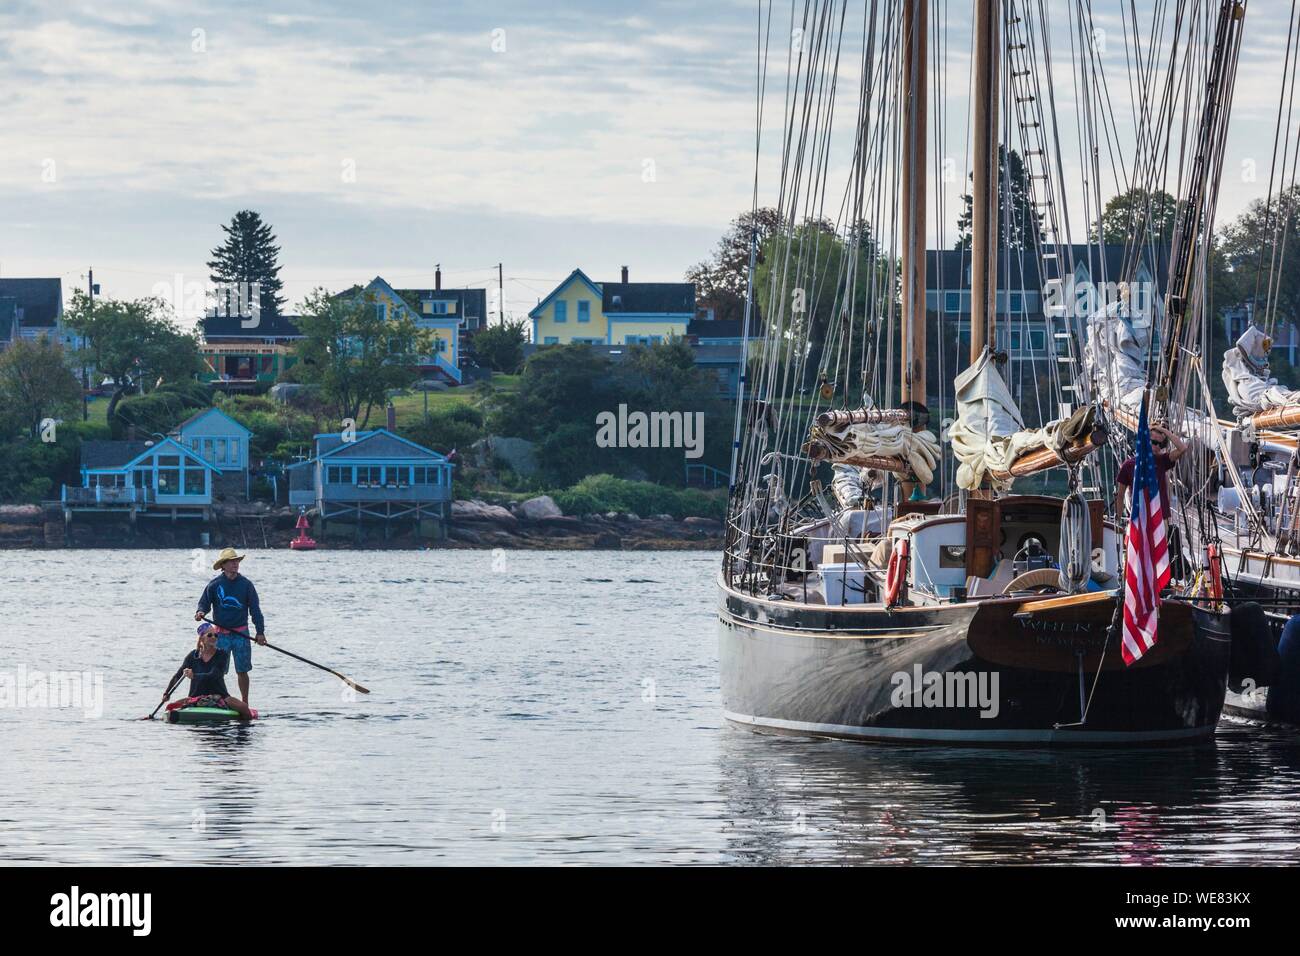 United States, New England, Massachusetts, Cape Ann, Gloucester, Gloucester Schooner Festival, paddleboarders among the schooners Stock Photo